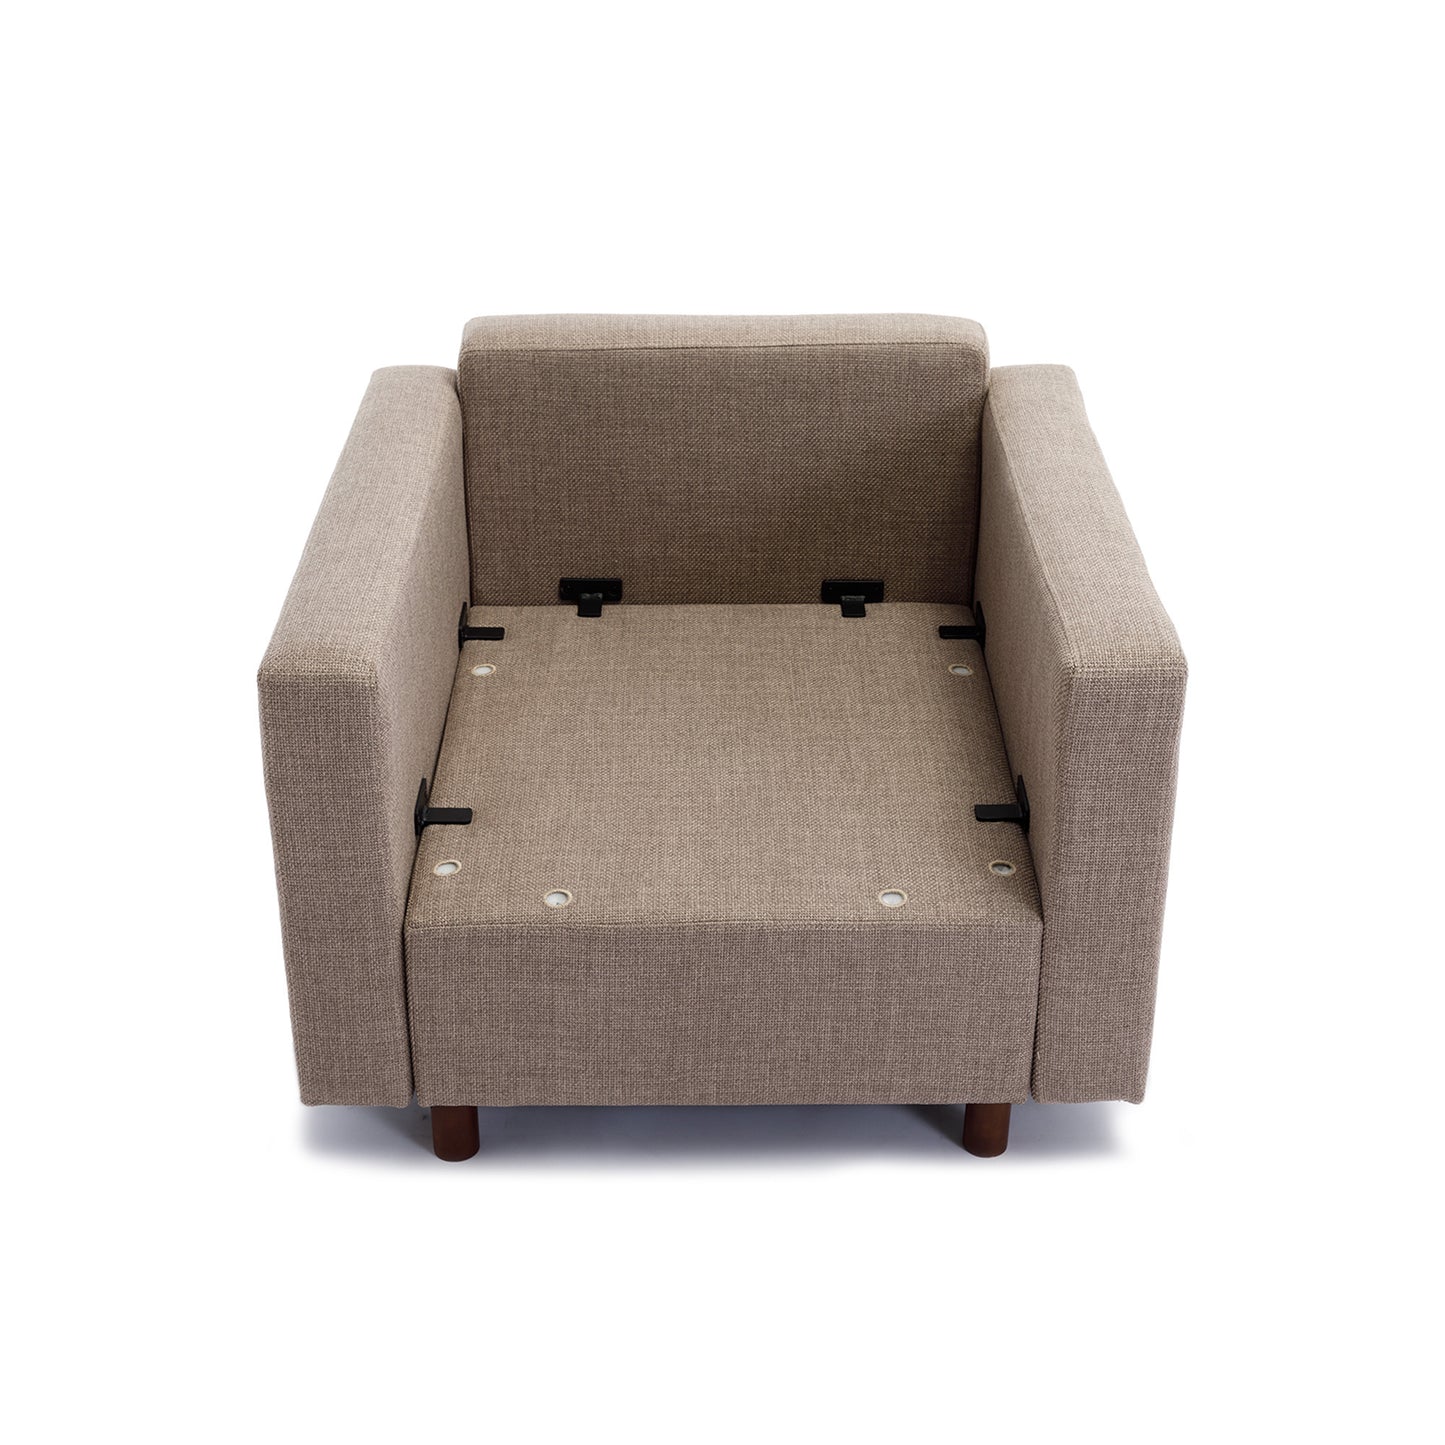 3 Seat Module Sectional Sofa in Brown w/ Ottoman